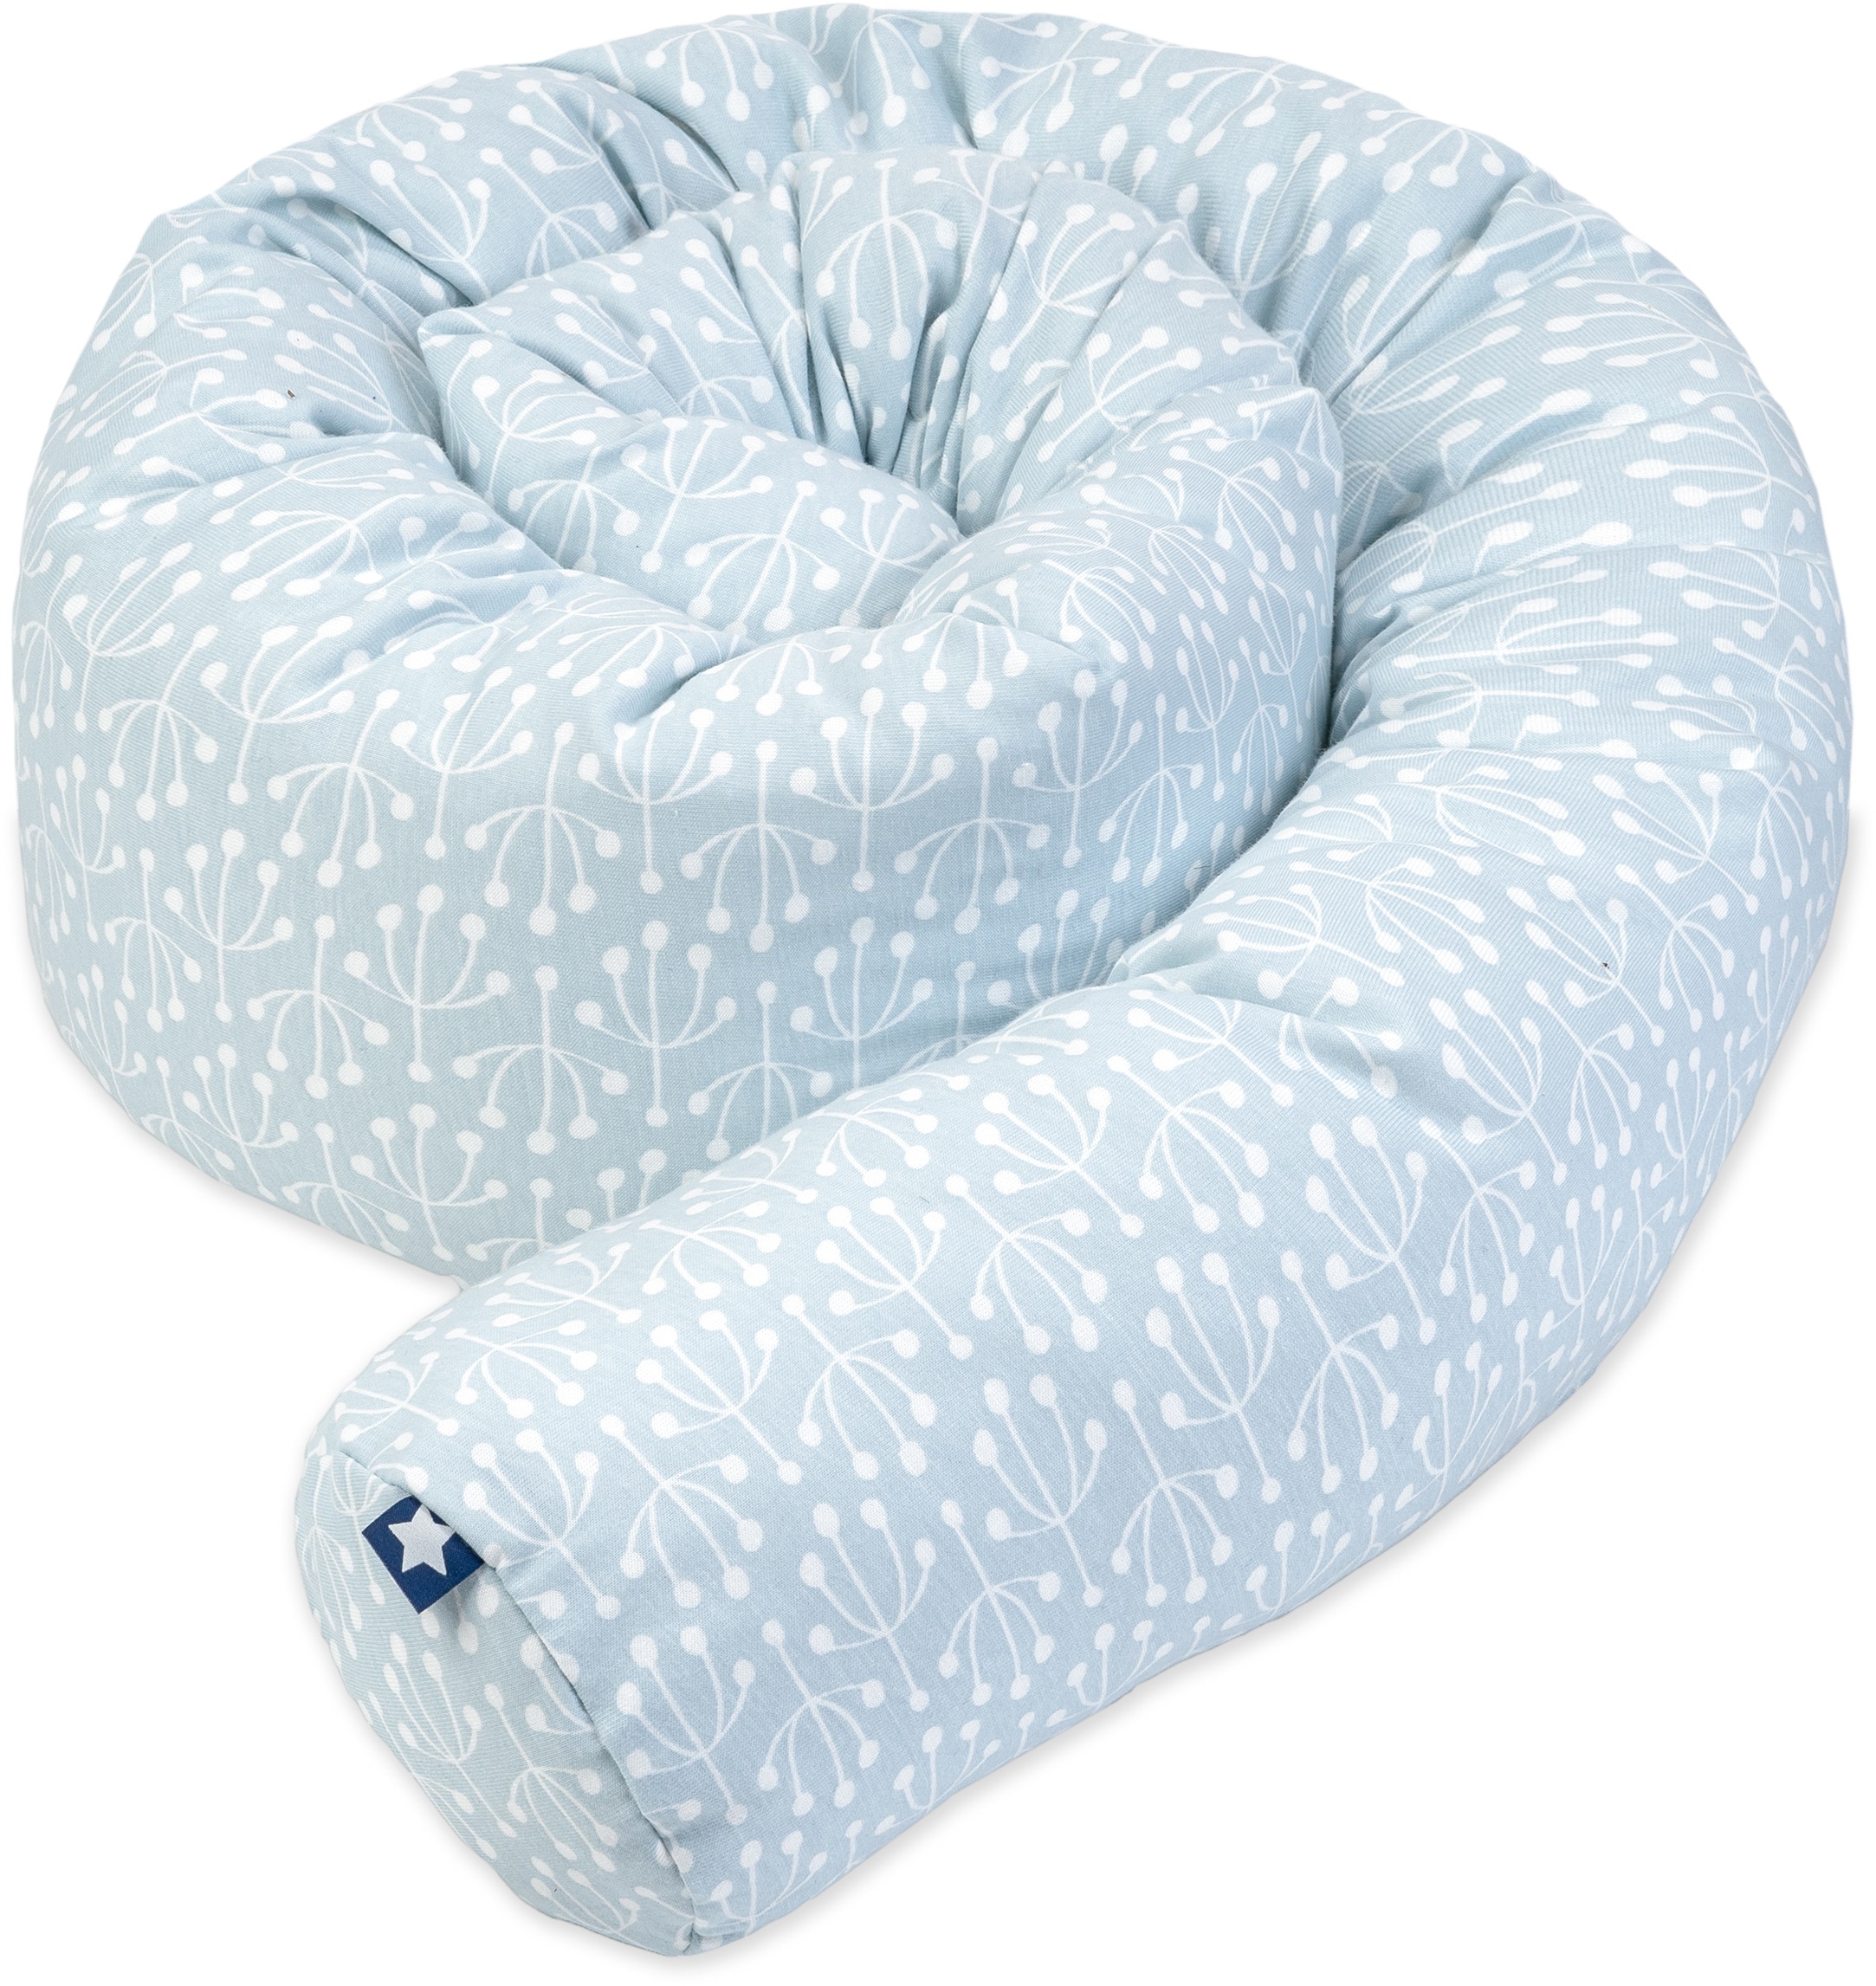 Zöllner Nestchenschlange - Schlangen-Kissen als Kopfschutz im Baby-Bett, zum Spielen oder Kuscheln, Bezug aus 100% Baumwolle - 180 cm Länge